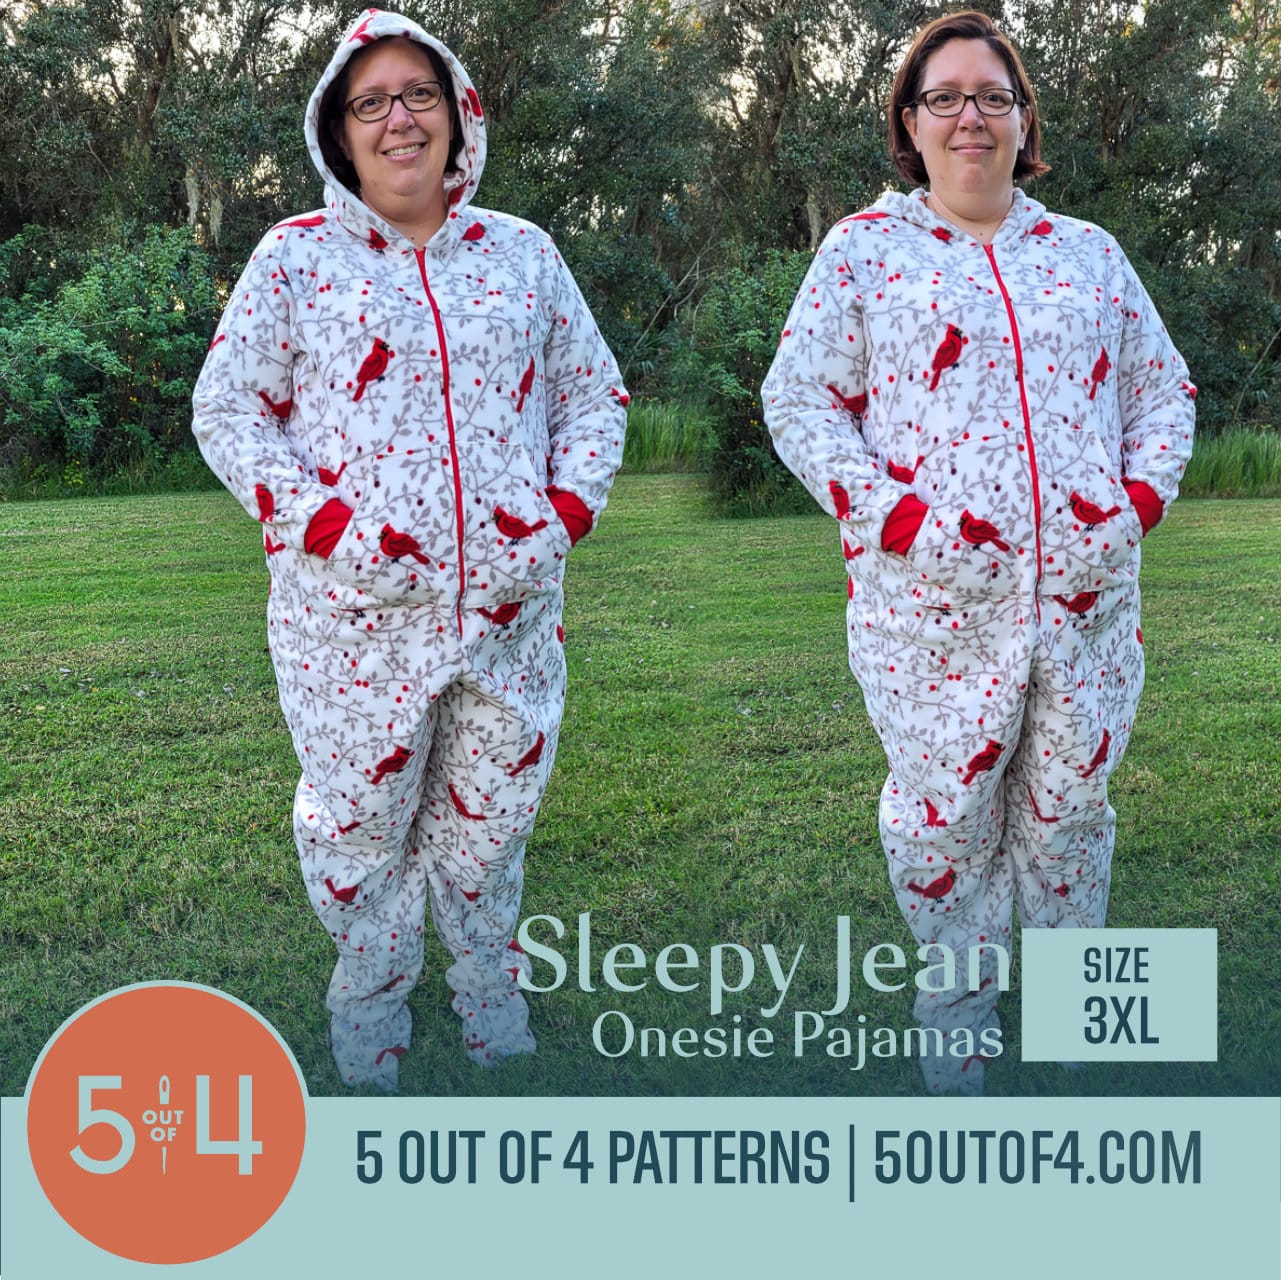 Sleepy Jean Onesie Pajamas - 5 out of 4 Patterns, onesie